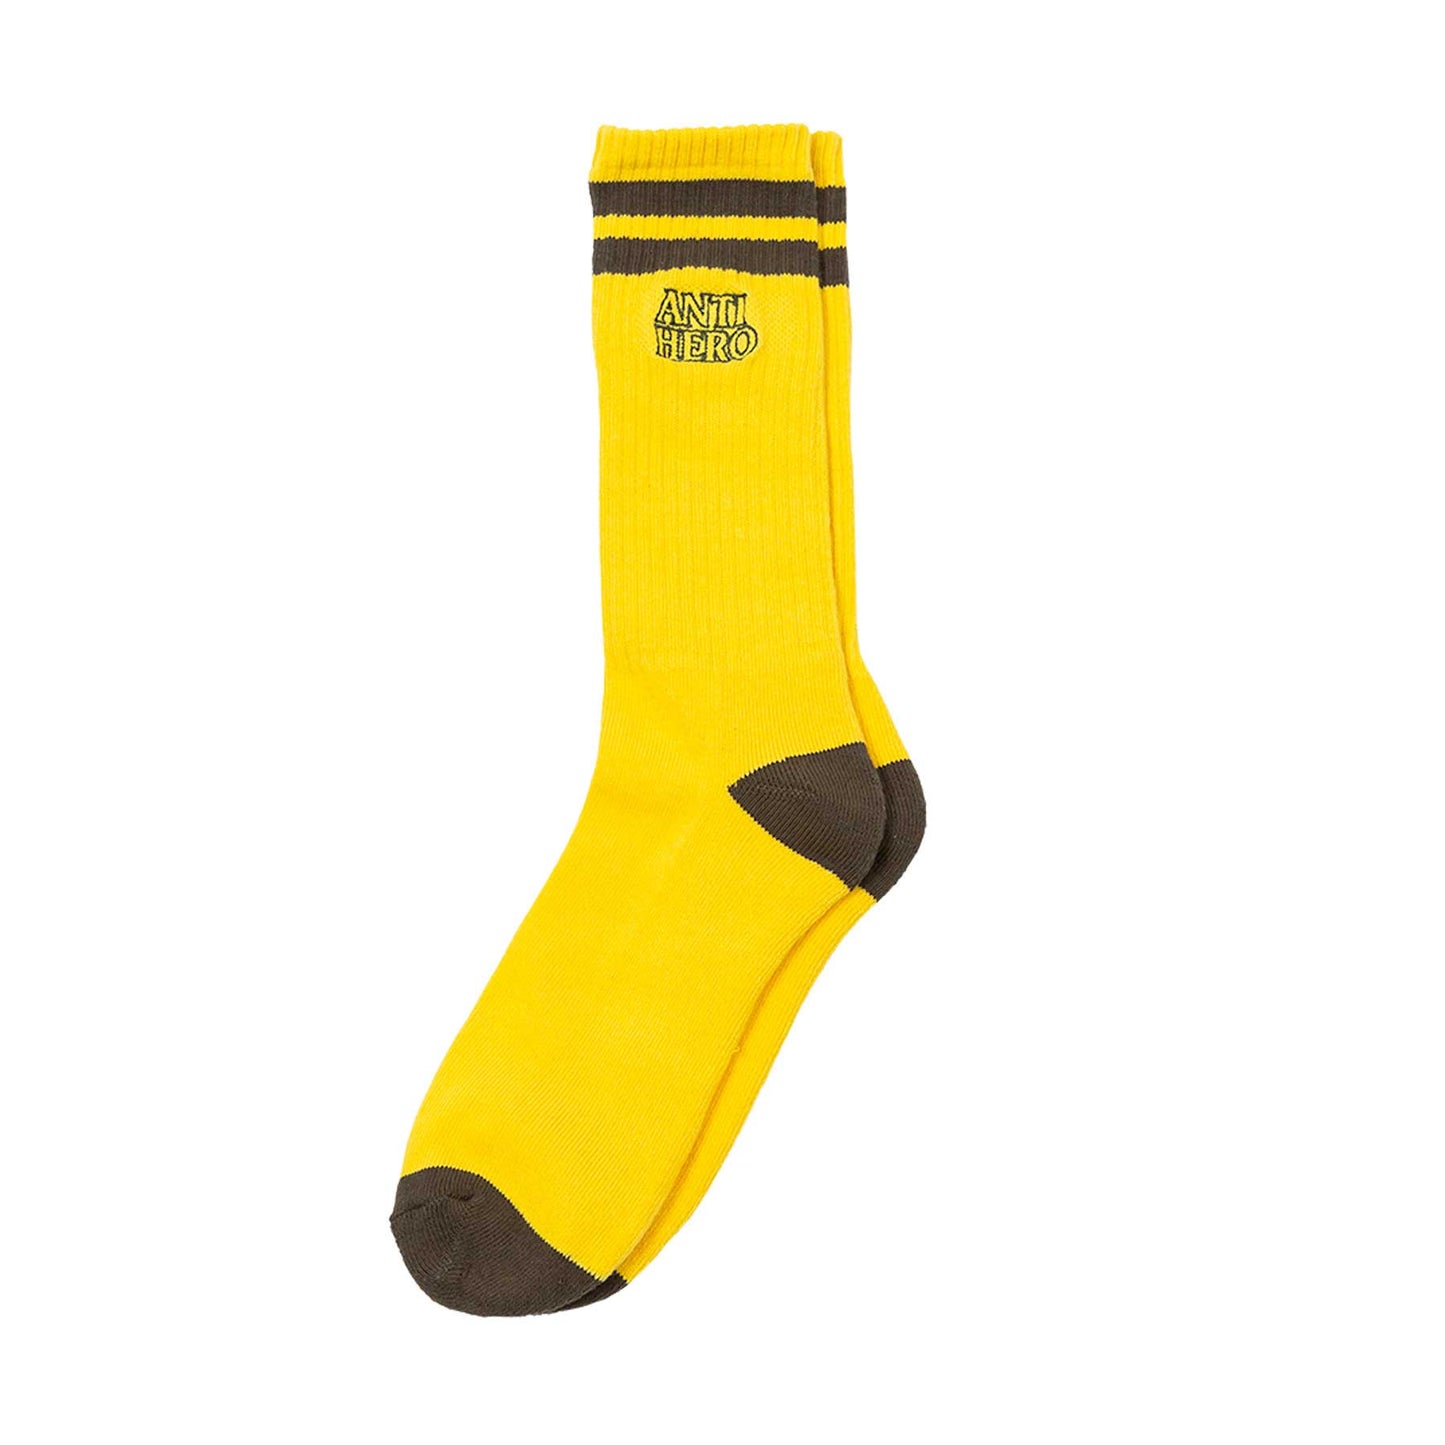 Antihero Black Hero Outline sock, Yellow/Olive - Tiki Room Skateboards - 1